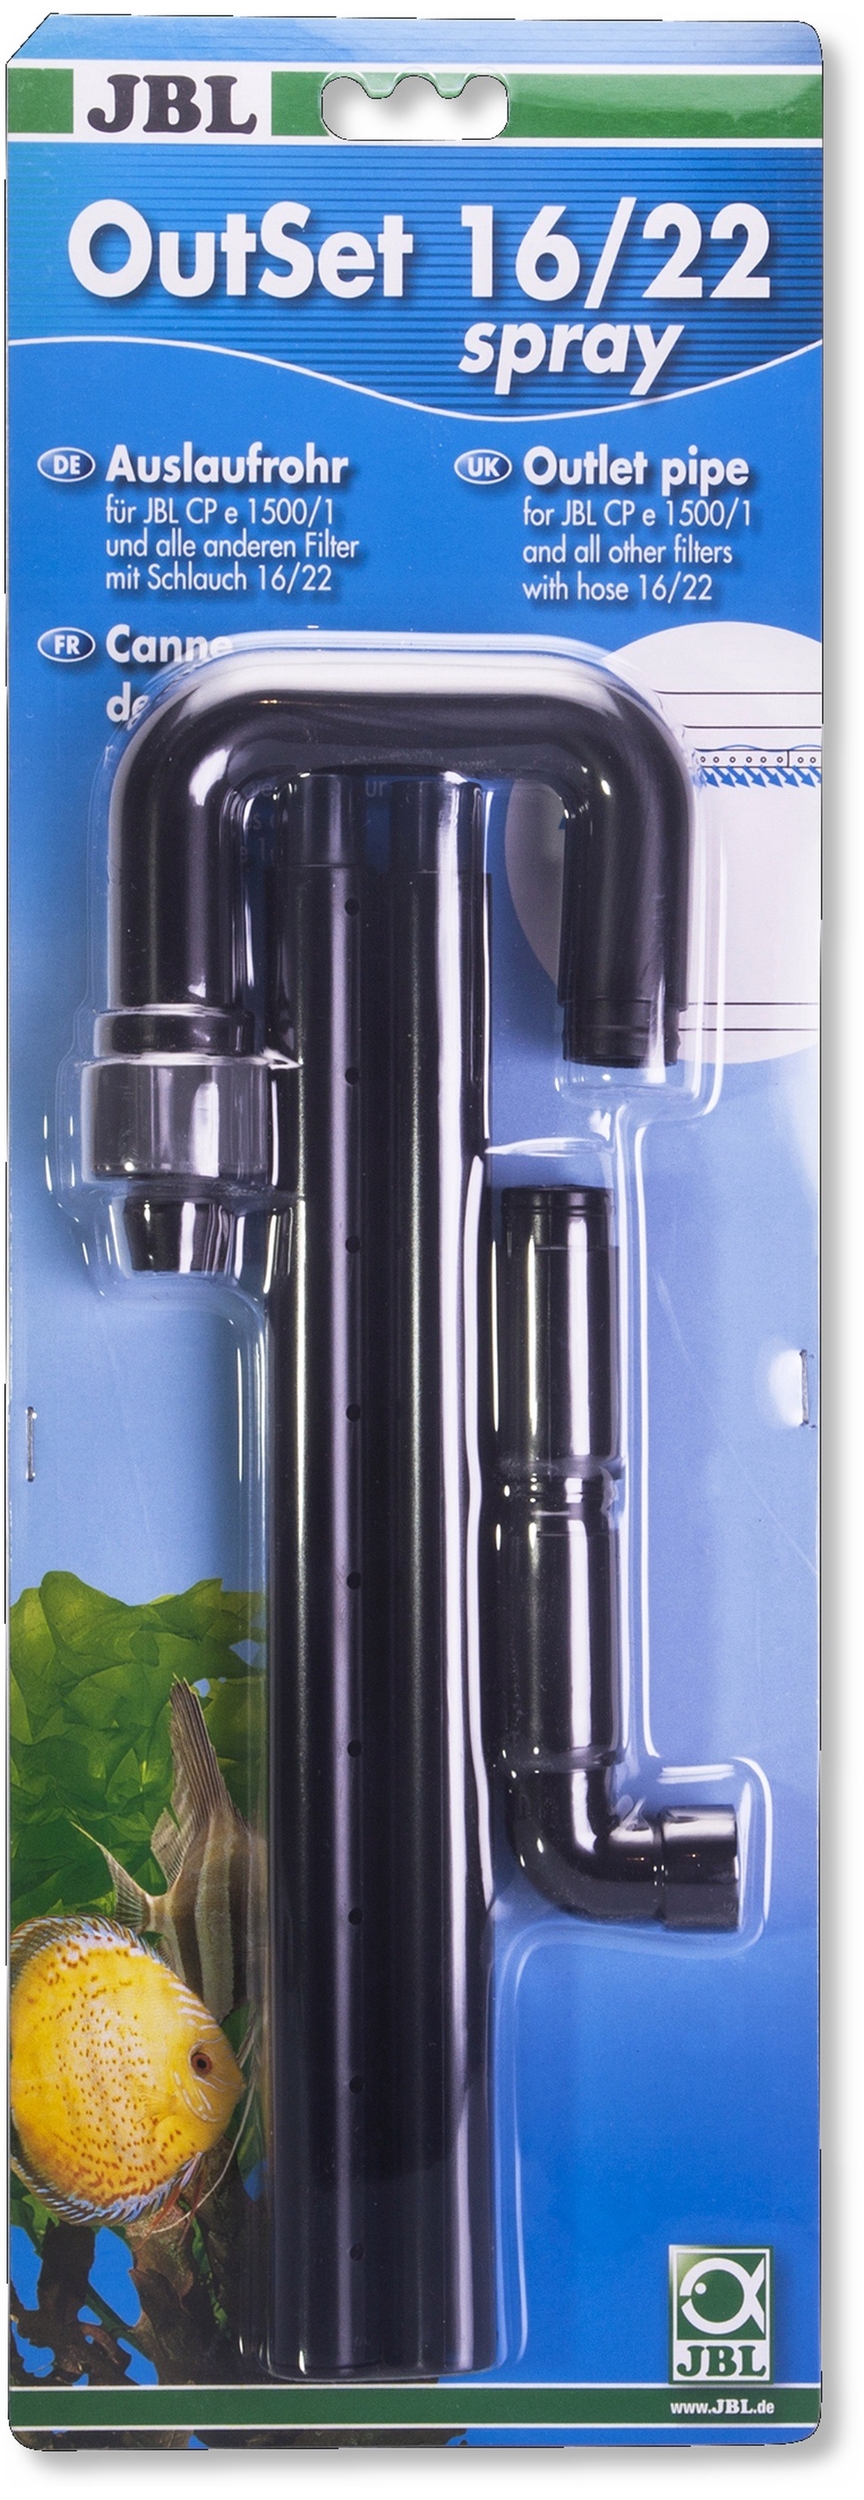 JBL OutSet Spray 16/22 canne de rejet universelle vaporisatrice pour tuyau 16/22 mm et filtres CristalProfi e150x